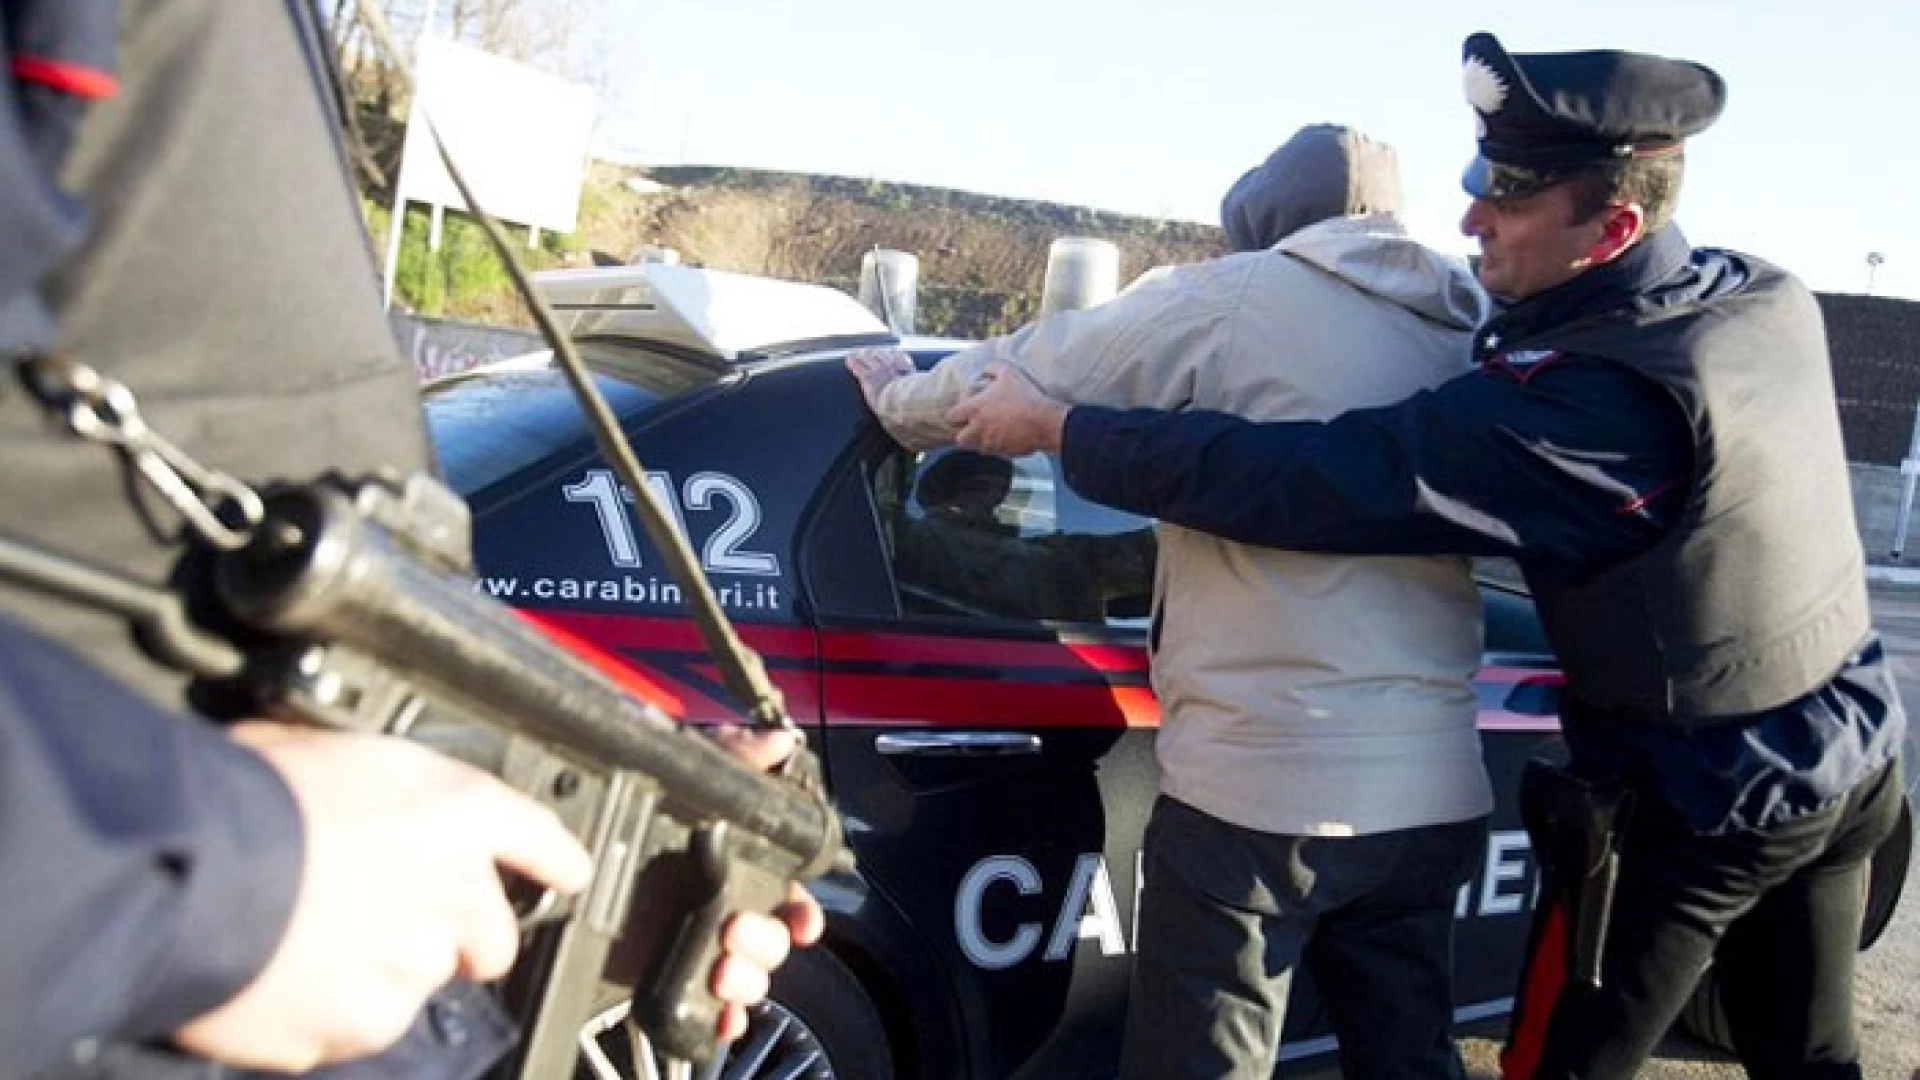 Macchiagodena: Carabinieri in azione, pregiudicato arrestato per estorsione ad un commerciante.